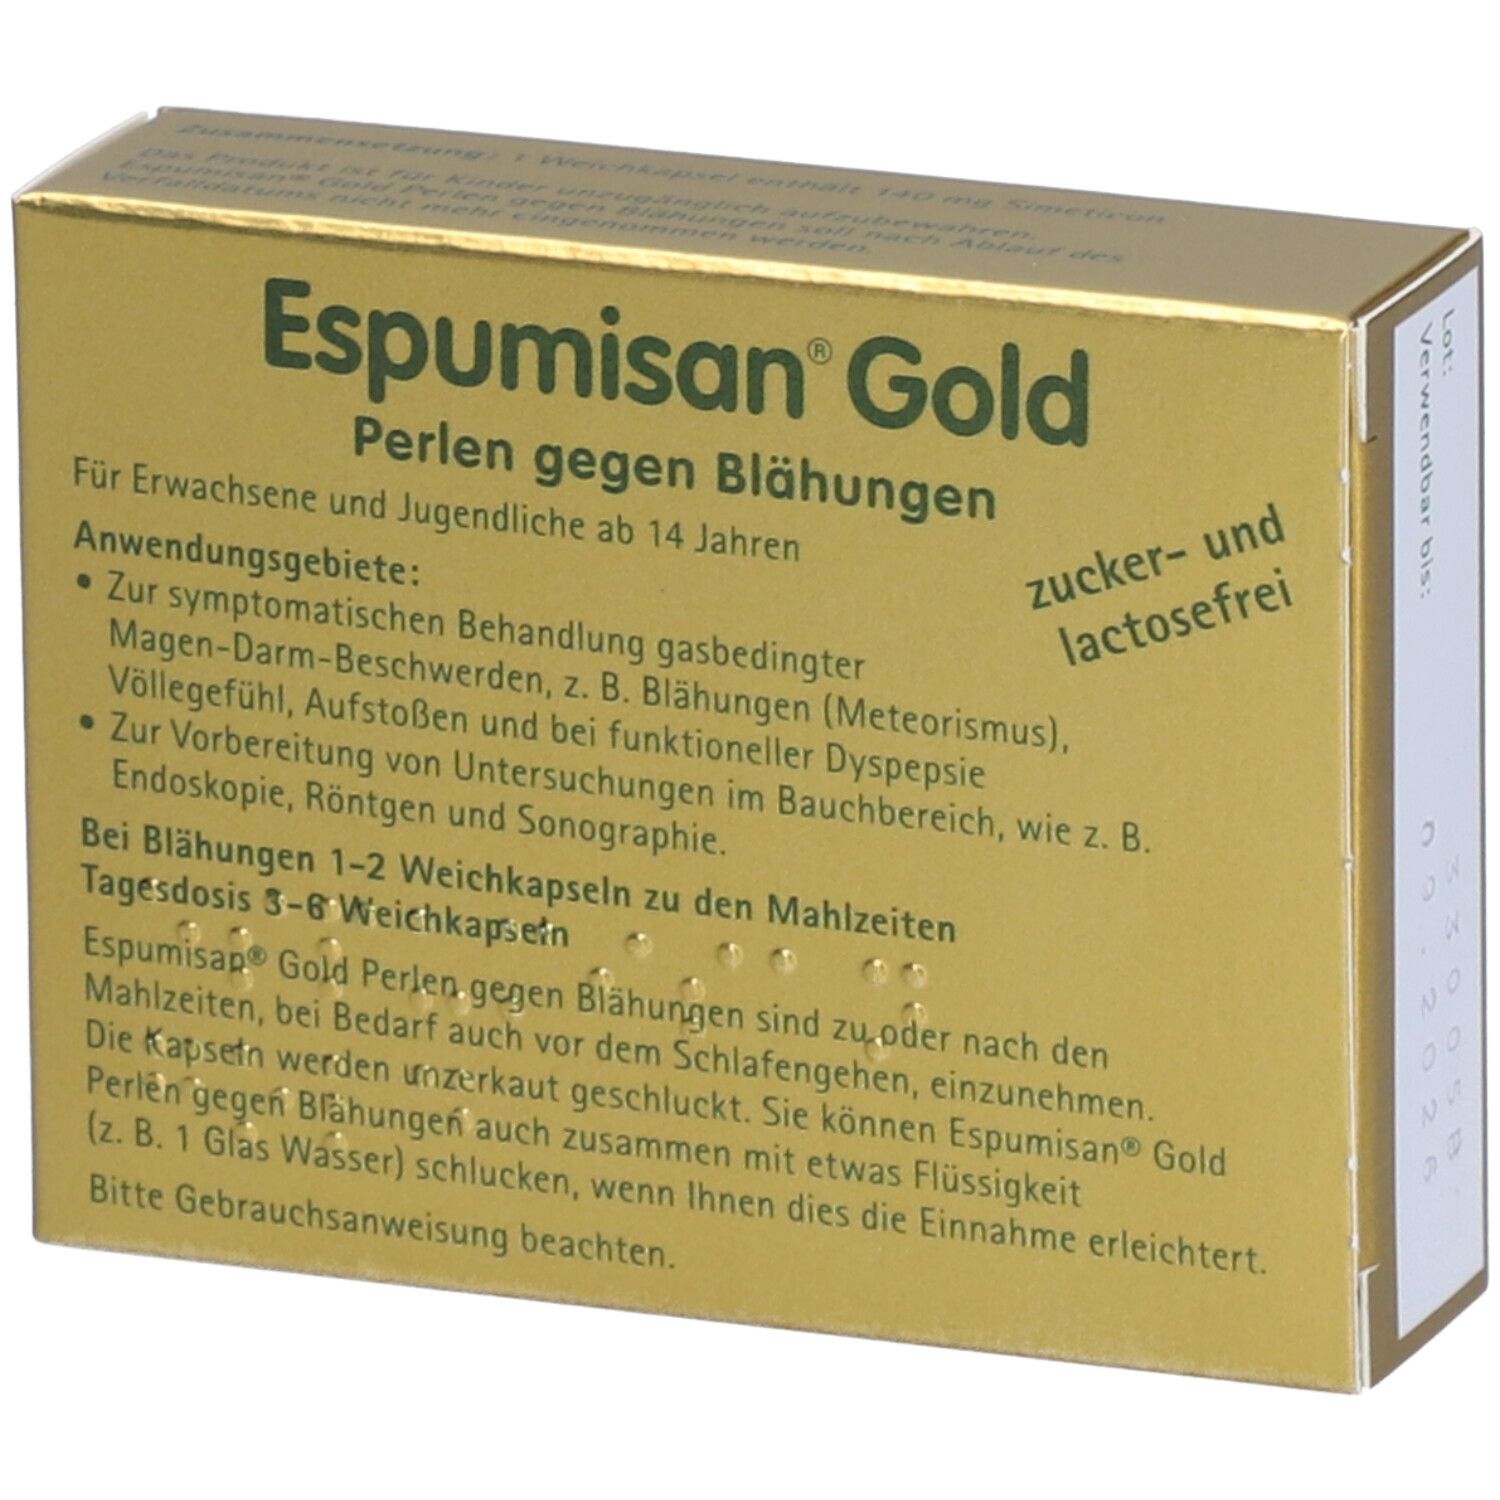 Espumisan® Gold